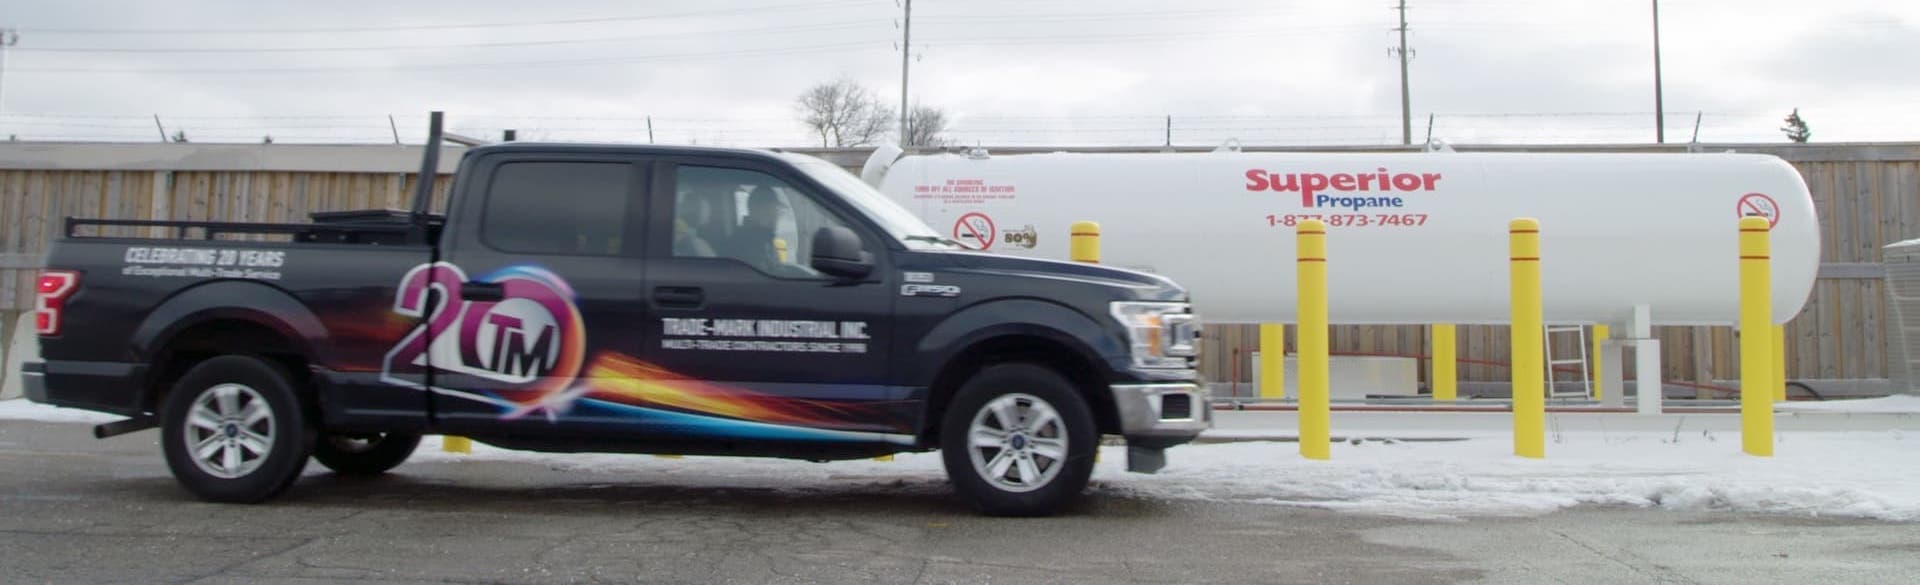 Un camion de Trade-Mark stationné devant un réservoir de 2 000 gallons